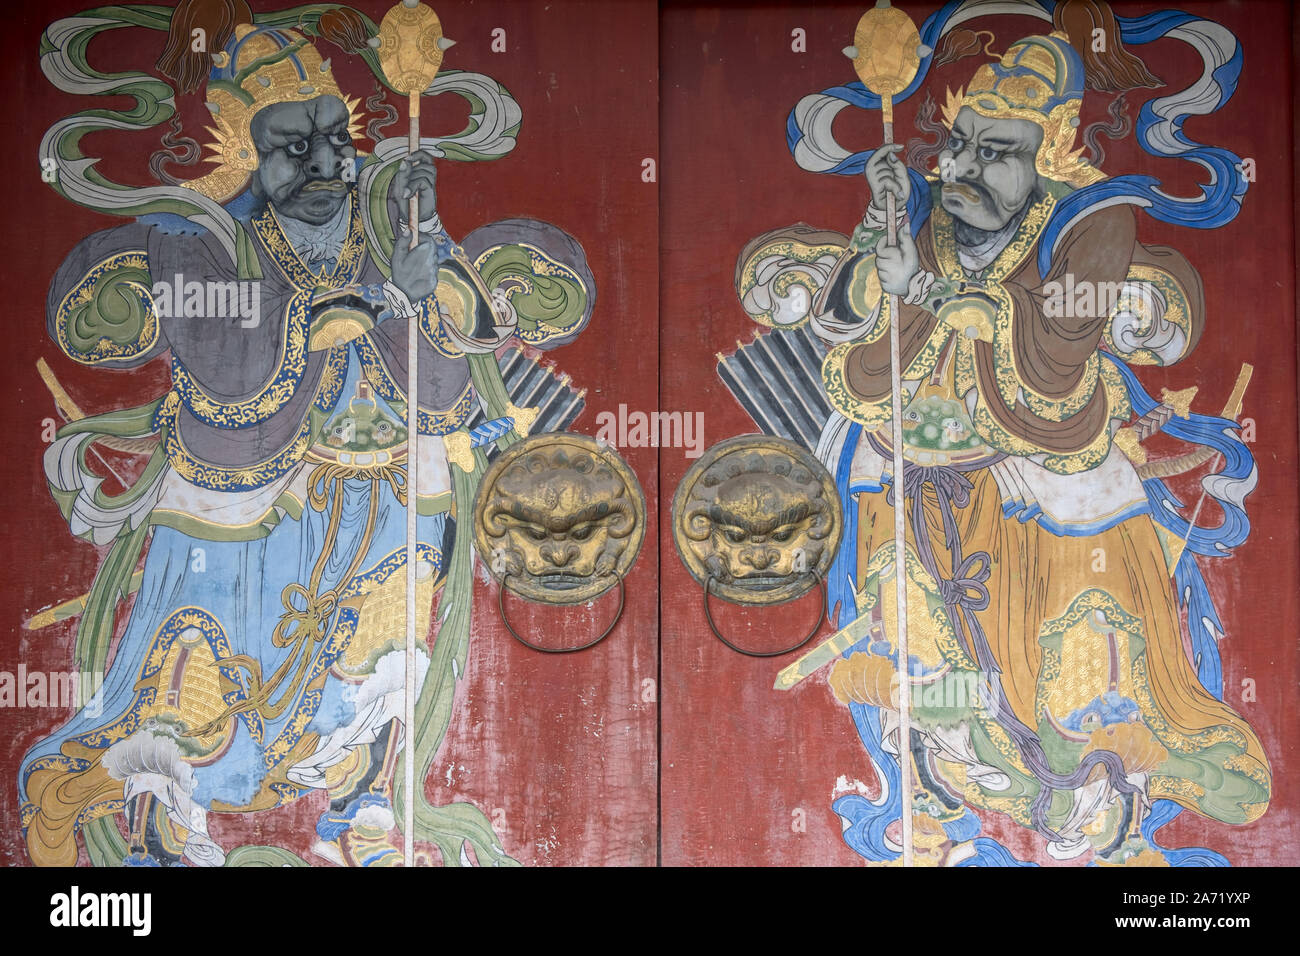 Art chinois peint dans une porte Banque D'Images